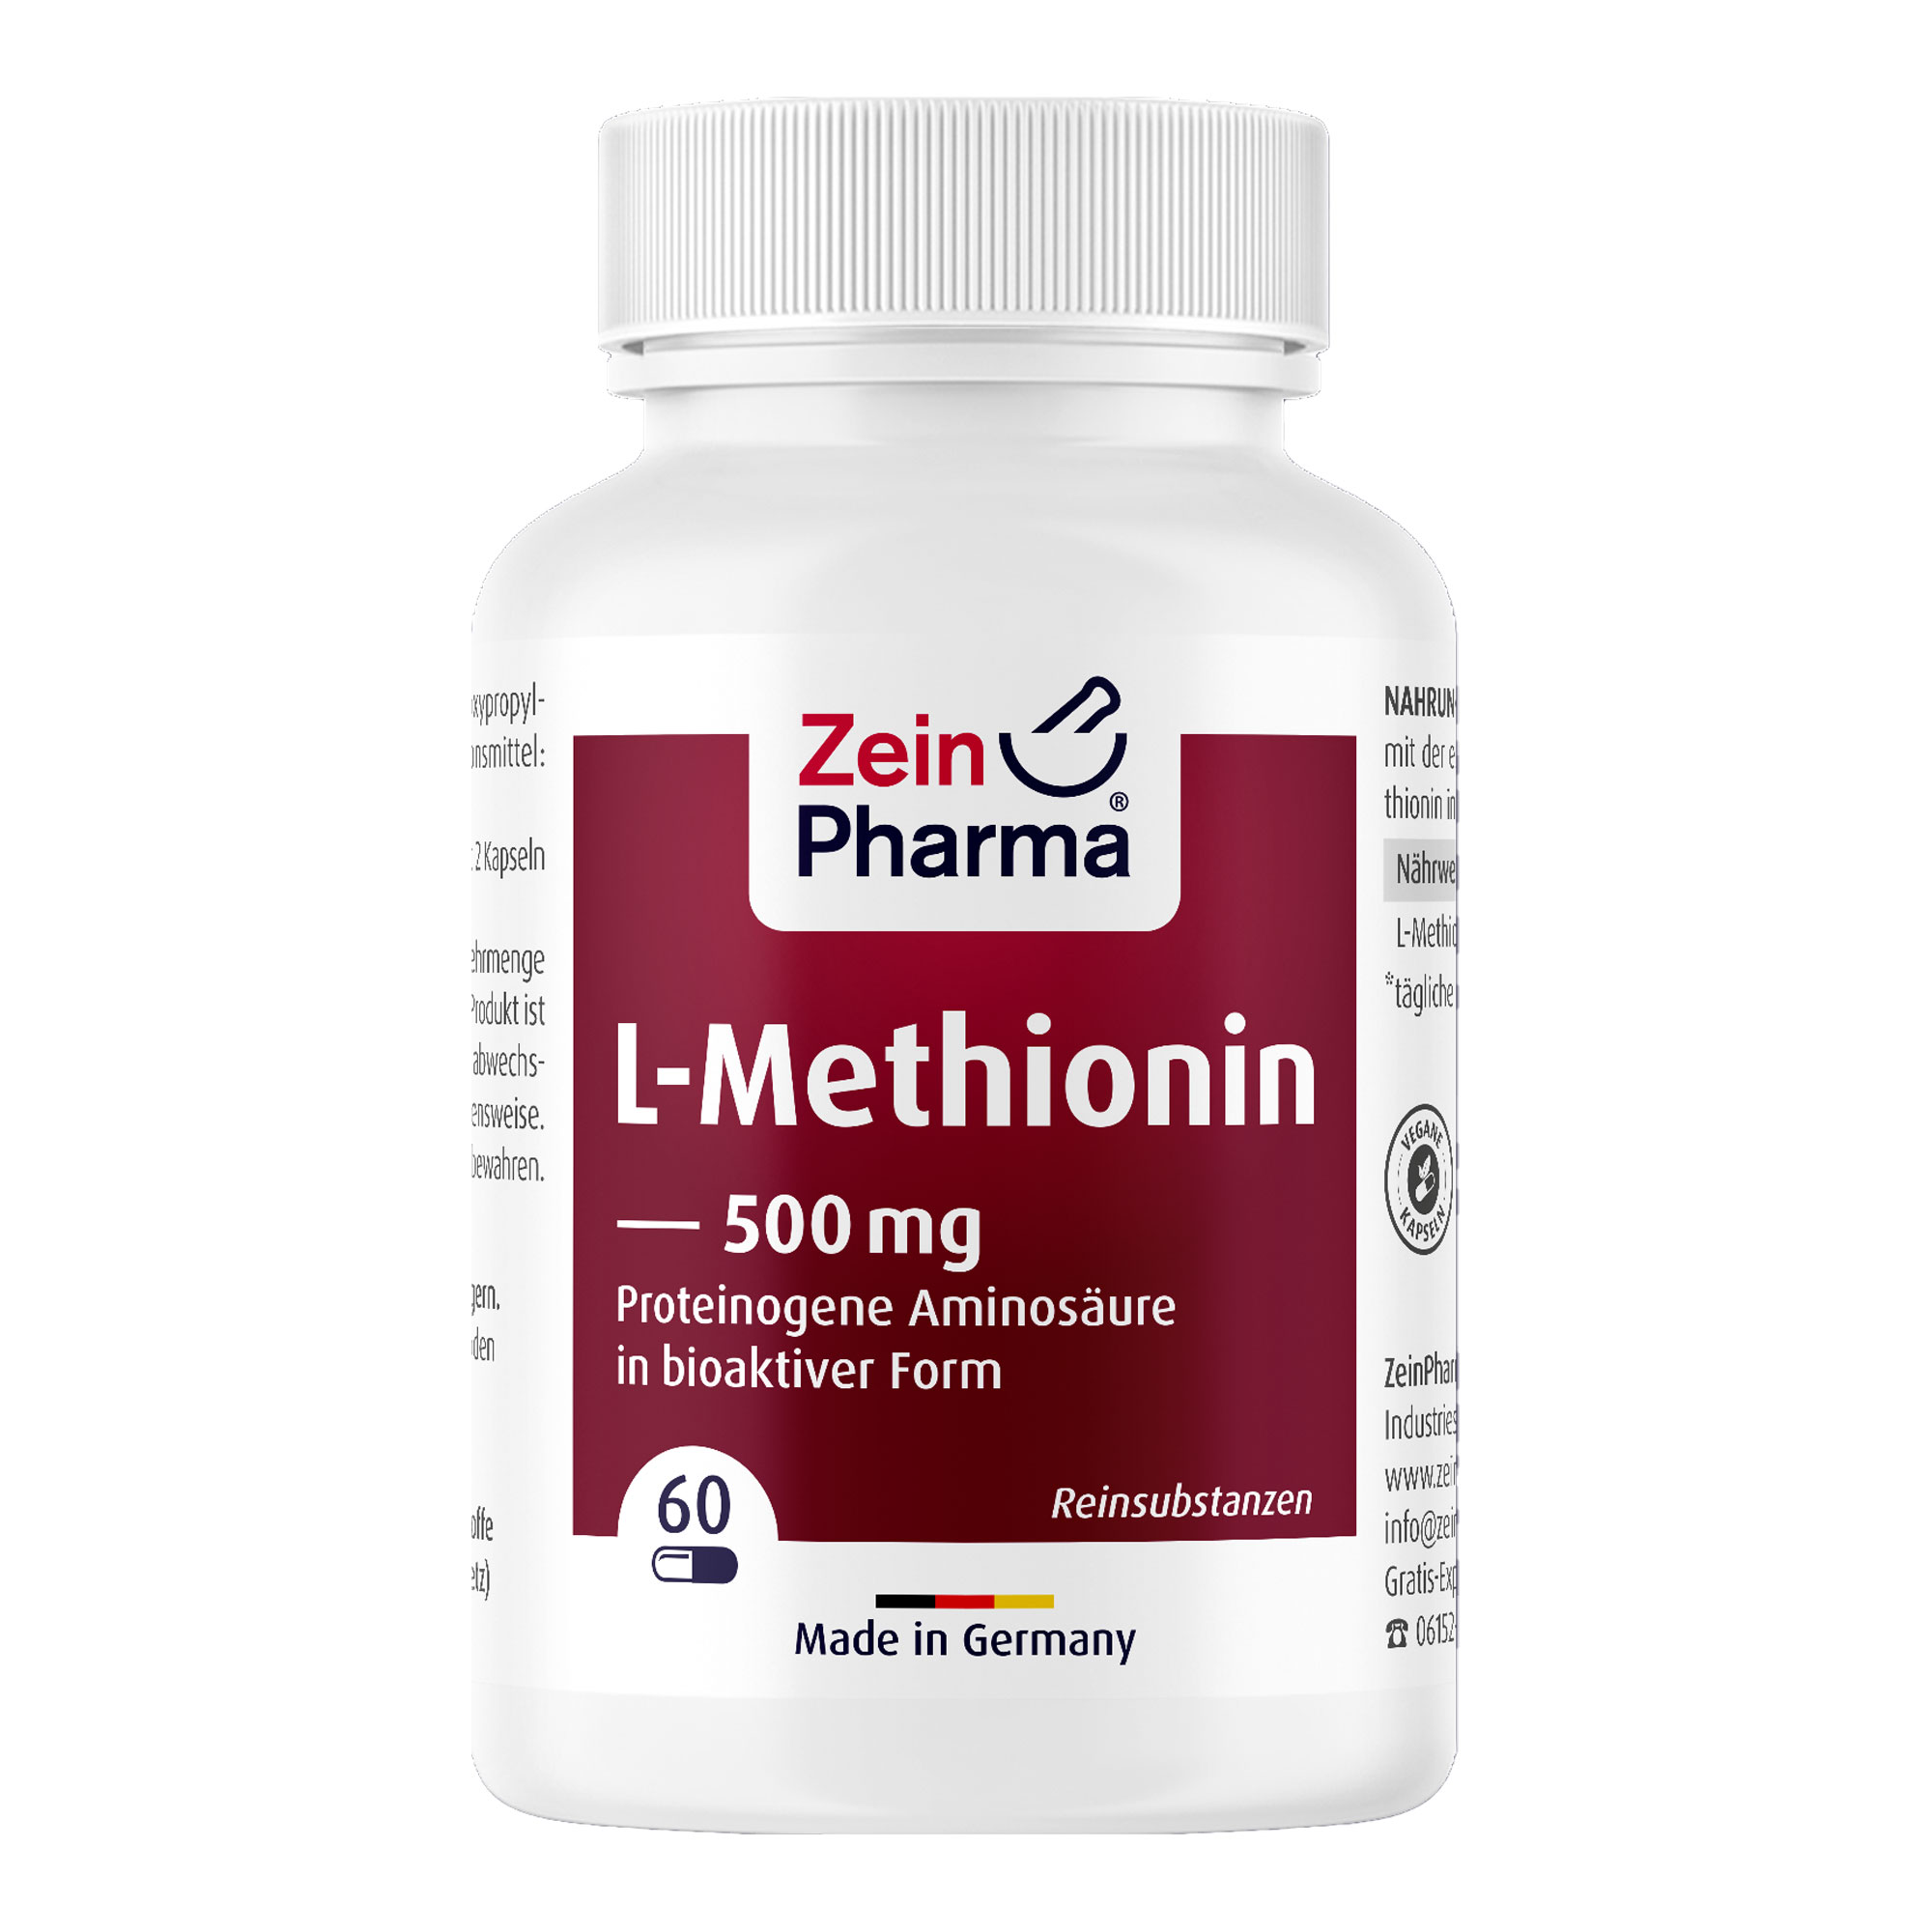 Nahrungsergänzungsmittel mit der essentiellen Aminosäure L-Methionin.